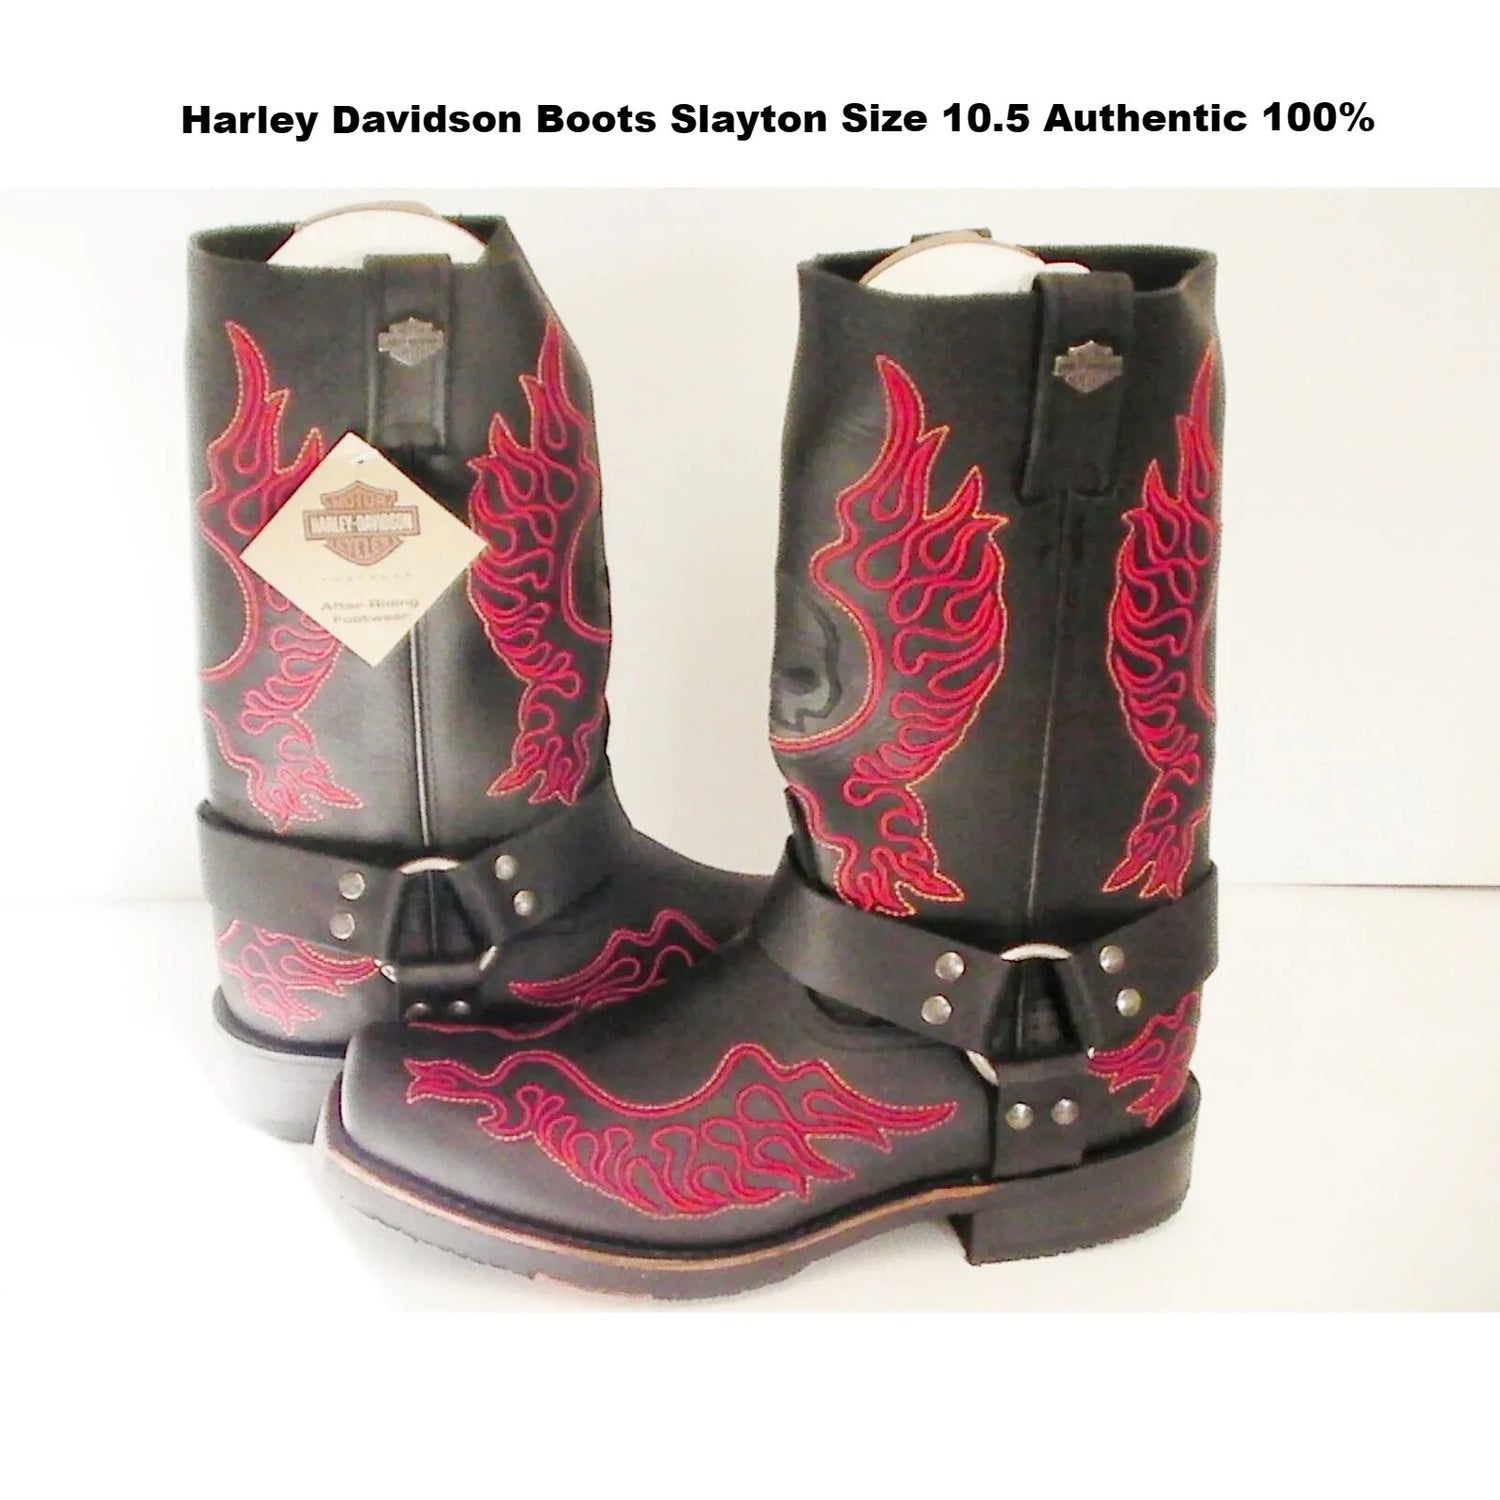 Harley Davidson mens boots Slayton D93141 leather black oil resisting size 10.5